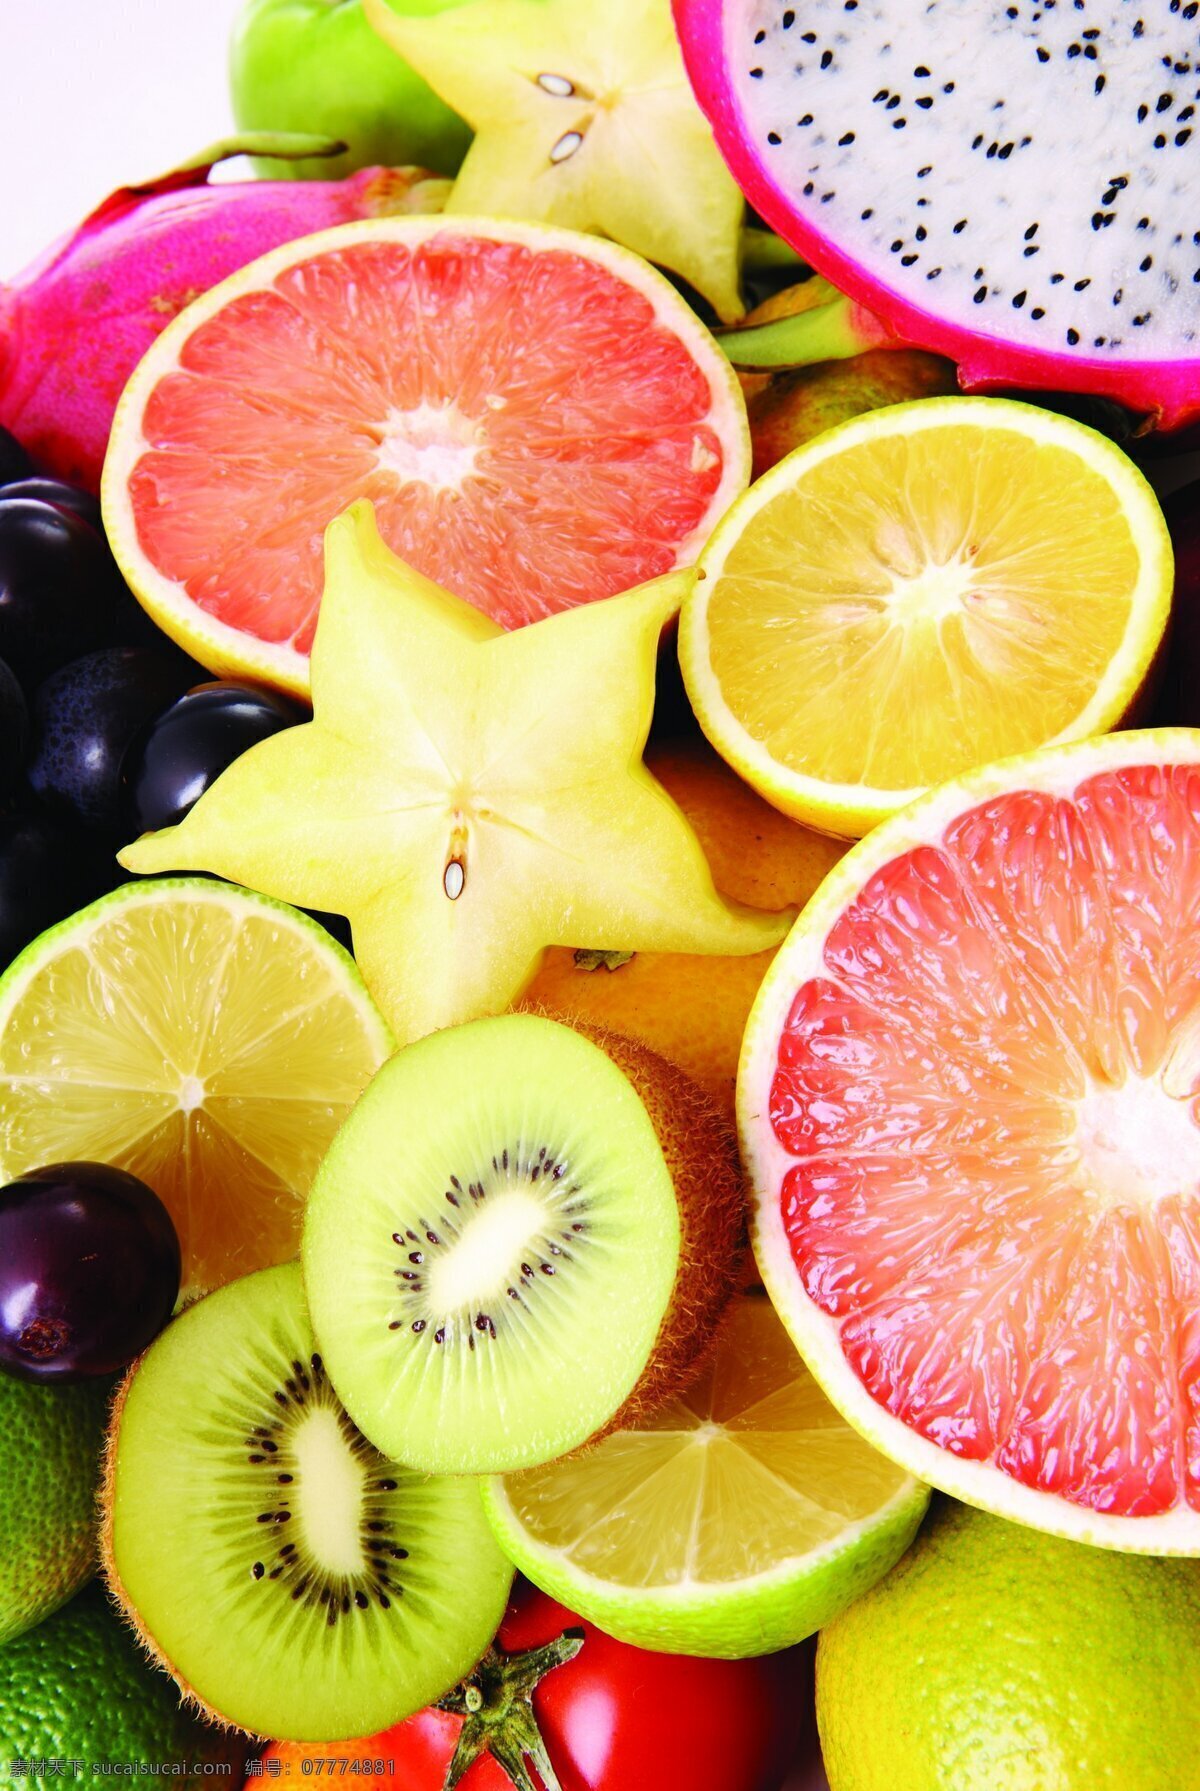 切开的水果 素食 沙拉 拼盘 水果拼盘 食物 蔬菜 食品 新鲜 美味 美食 蔬菜水果 水果 水果蔬菜 生物世界